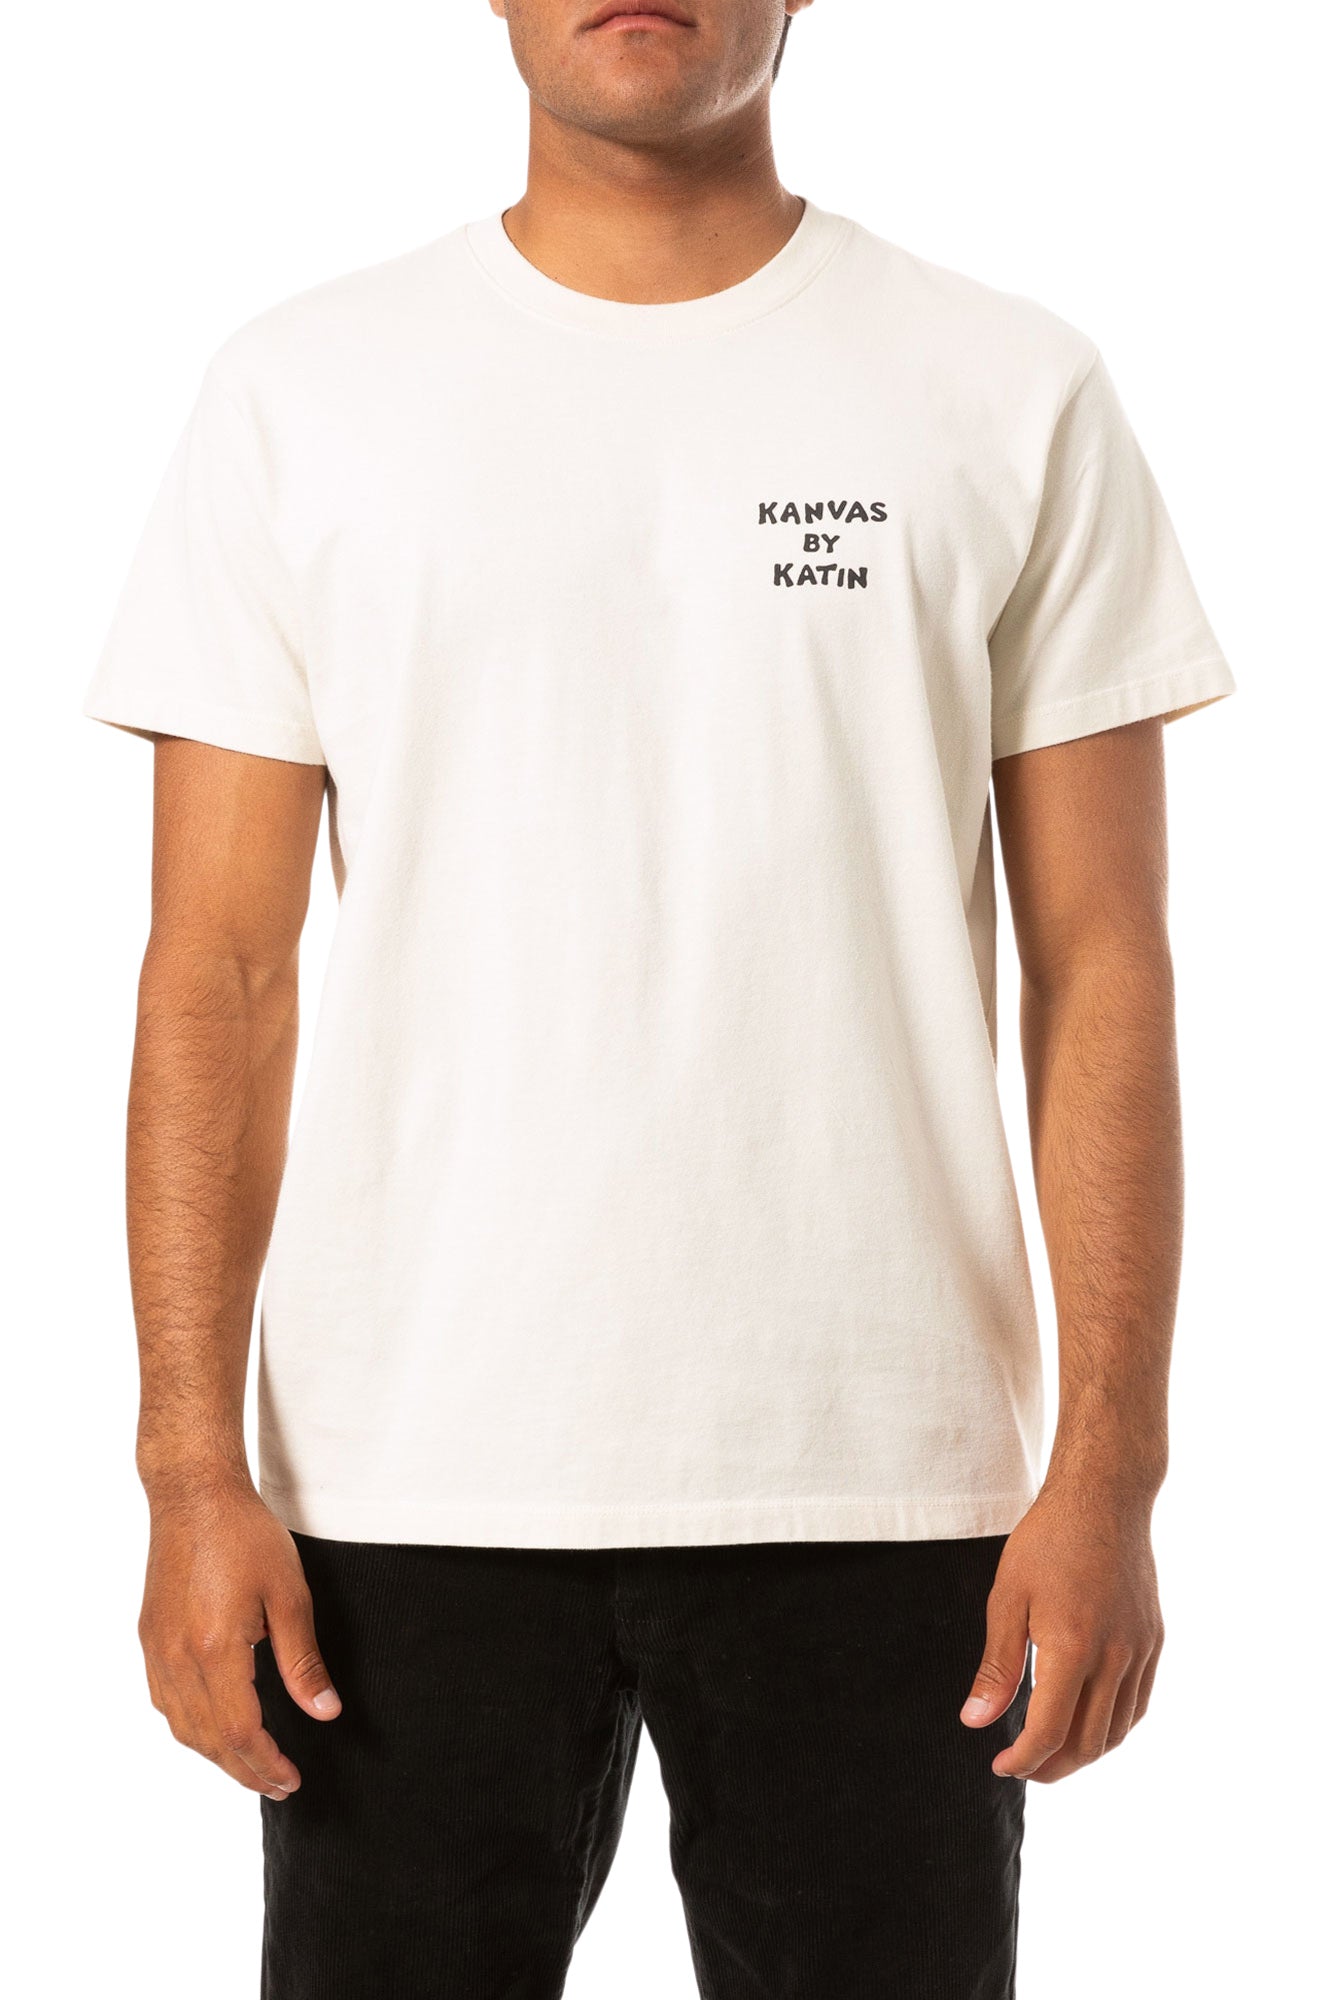 T-shirt homme Vacant | Katin USA